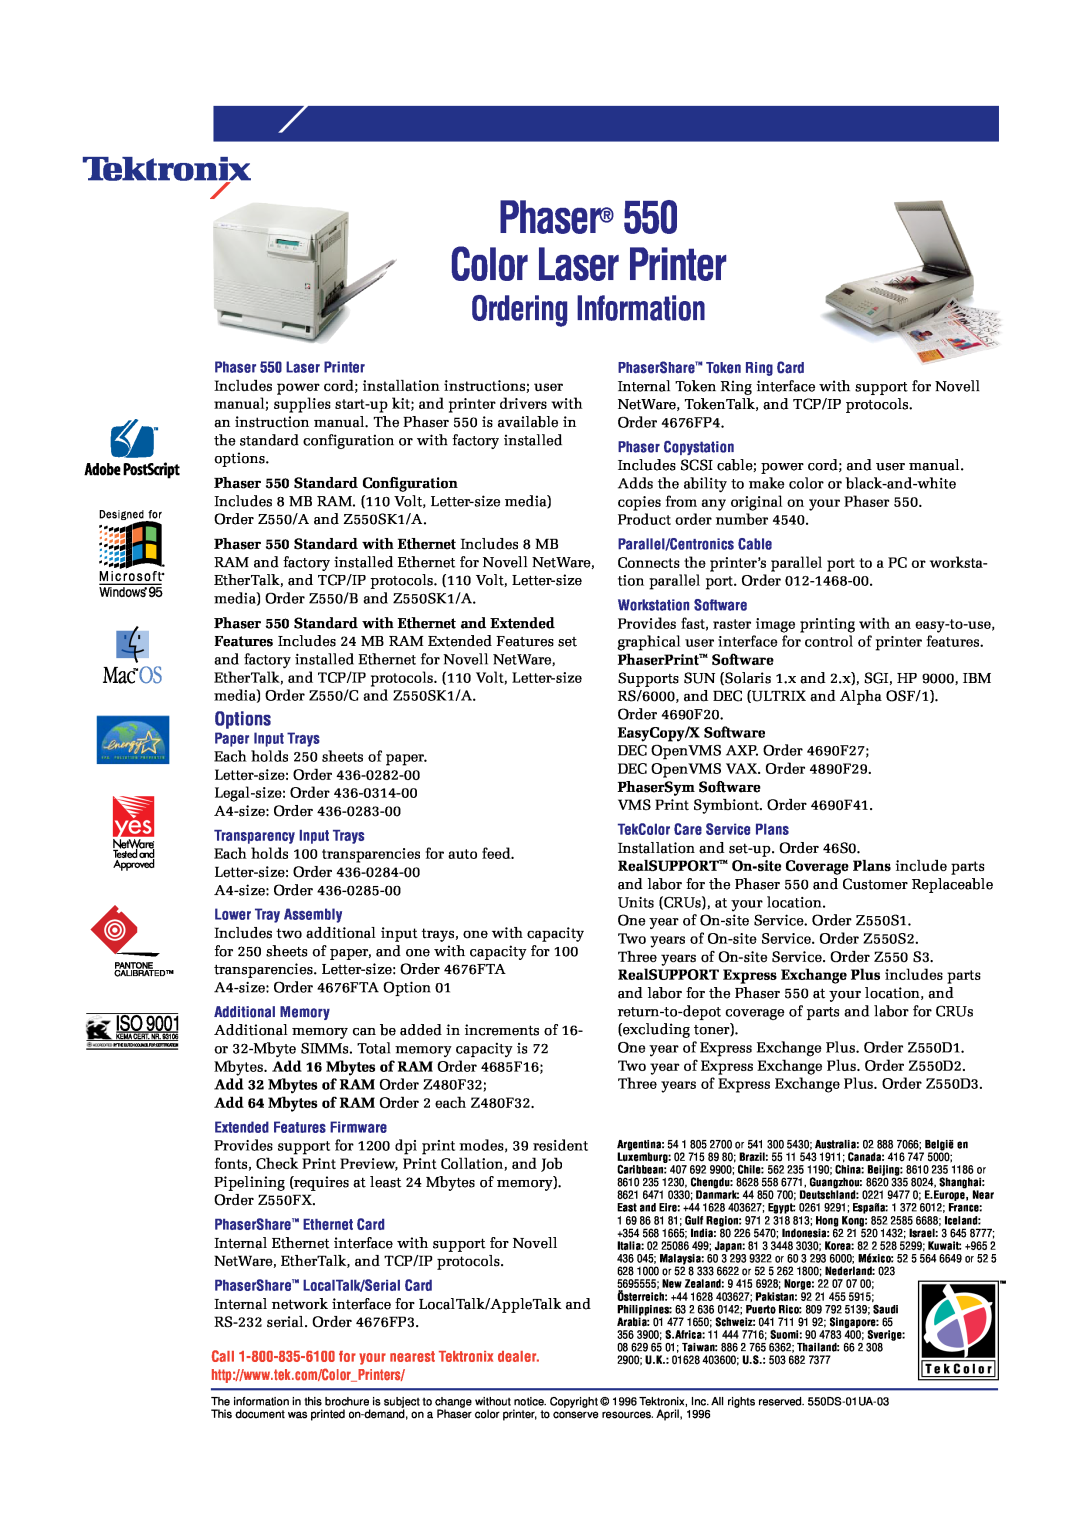 Tektronix brochure Ordering Information, Options, Phaser Color Laser Printer, Phaser 550 Standard Configuration 